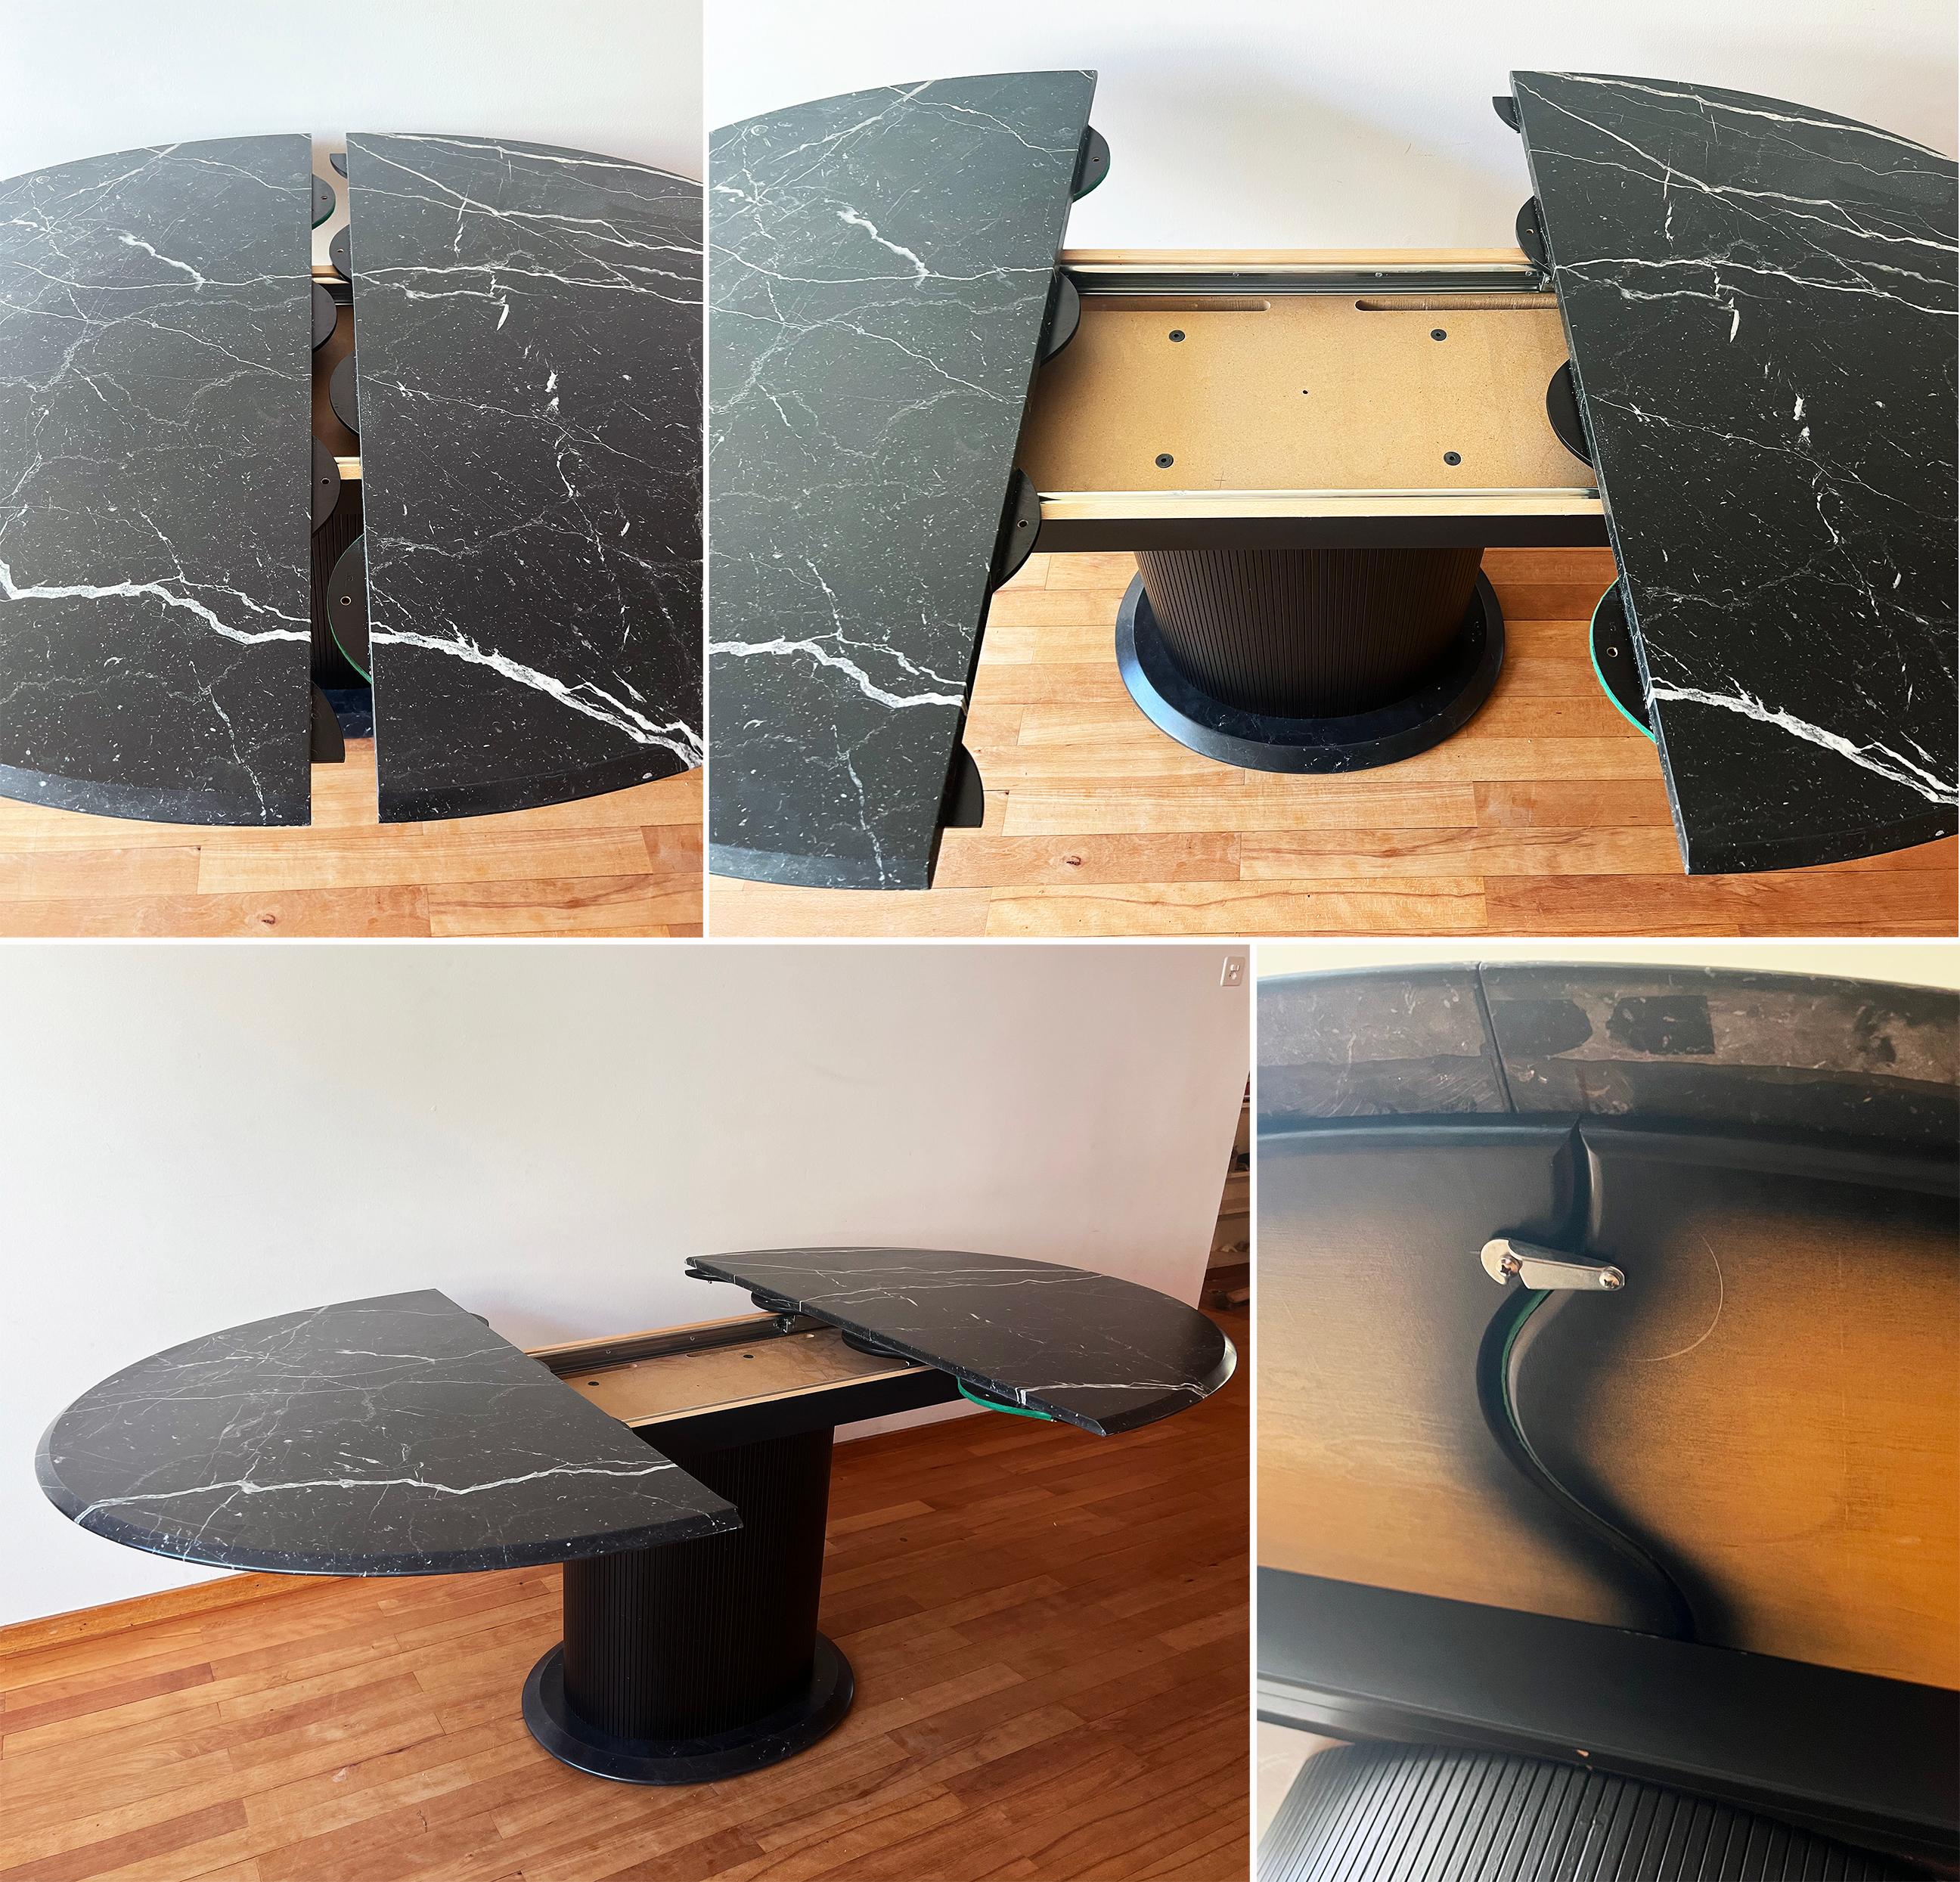 Incroyable table italienne postmoderne des années 1980 en marbre avec base en bois laqué ébonisé et rallonge de table en bois laqué du même style.  Cette pièce est polyvalente et d'un design rare. Il est GORGEUX en personne !

Magnifique motif